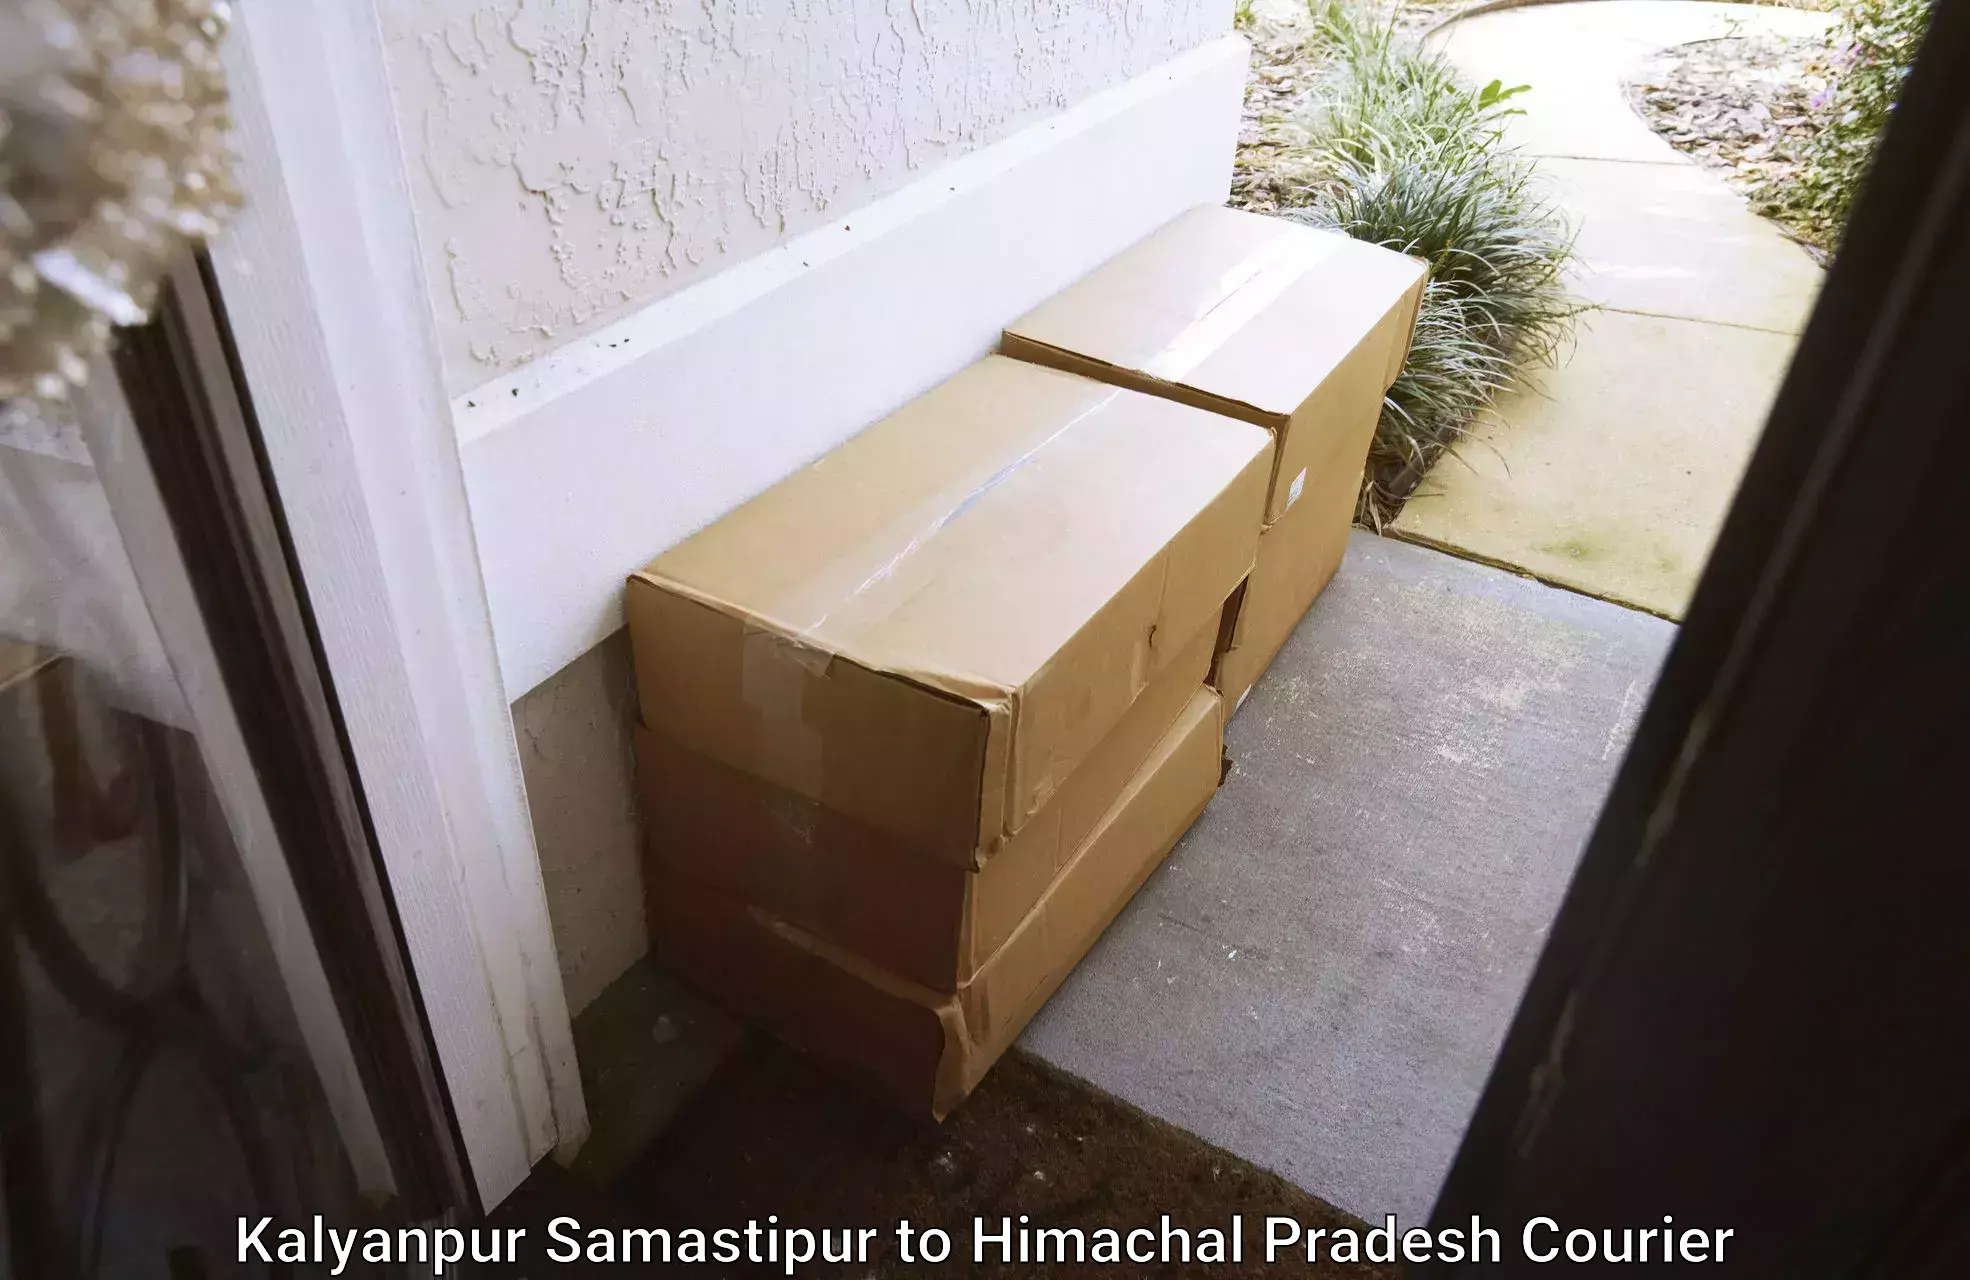 Household goods transporters Kalyanpur Samastipur to Himachal Pradesh